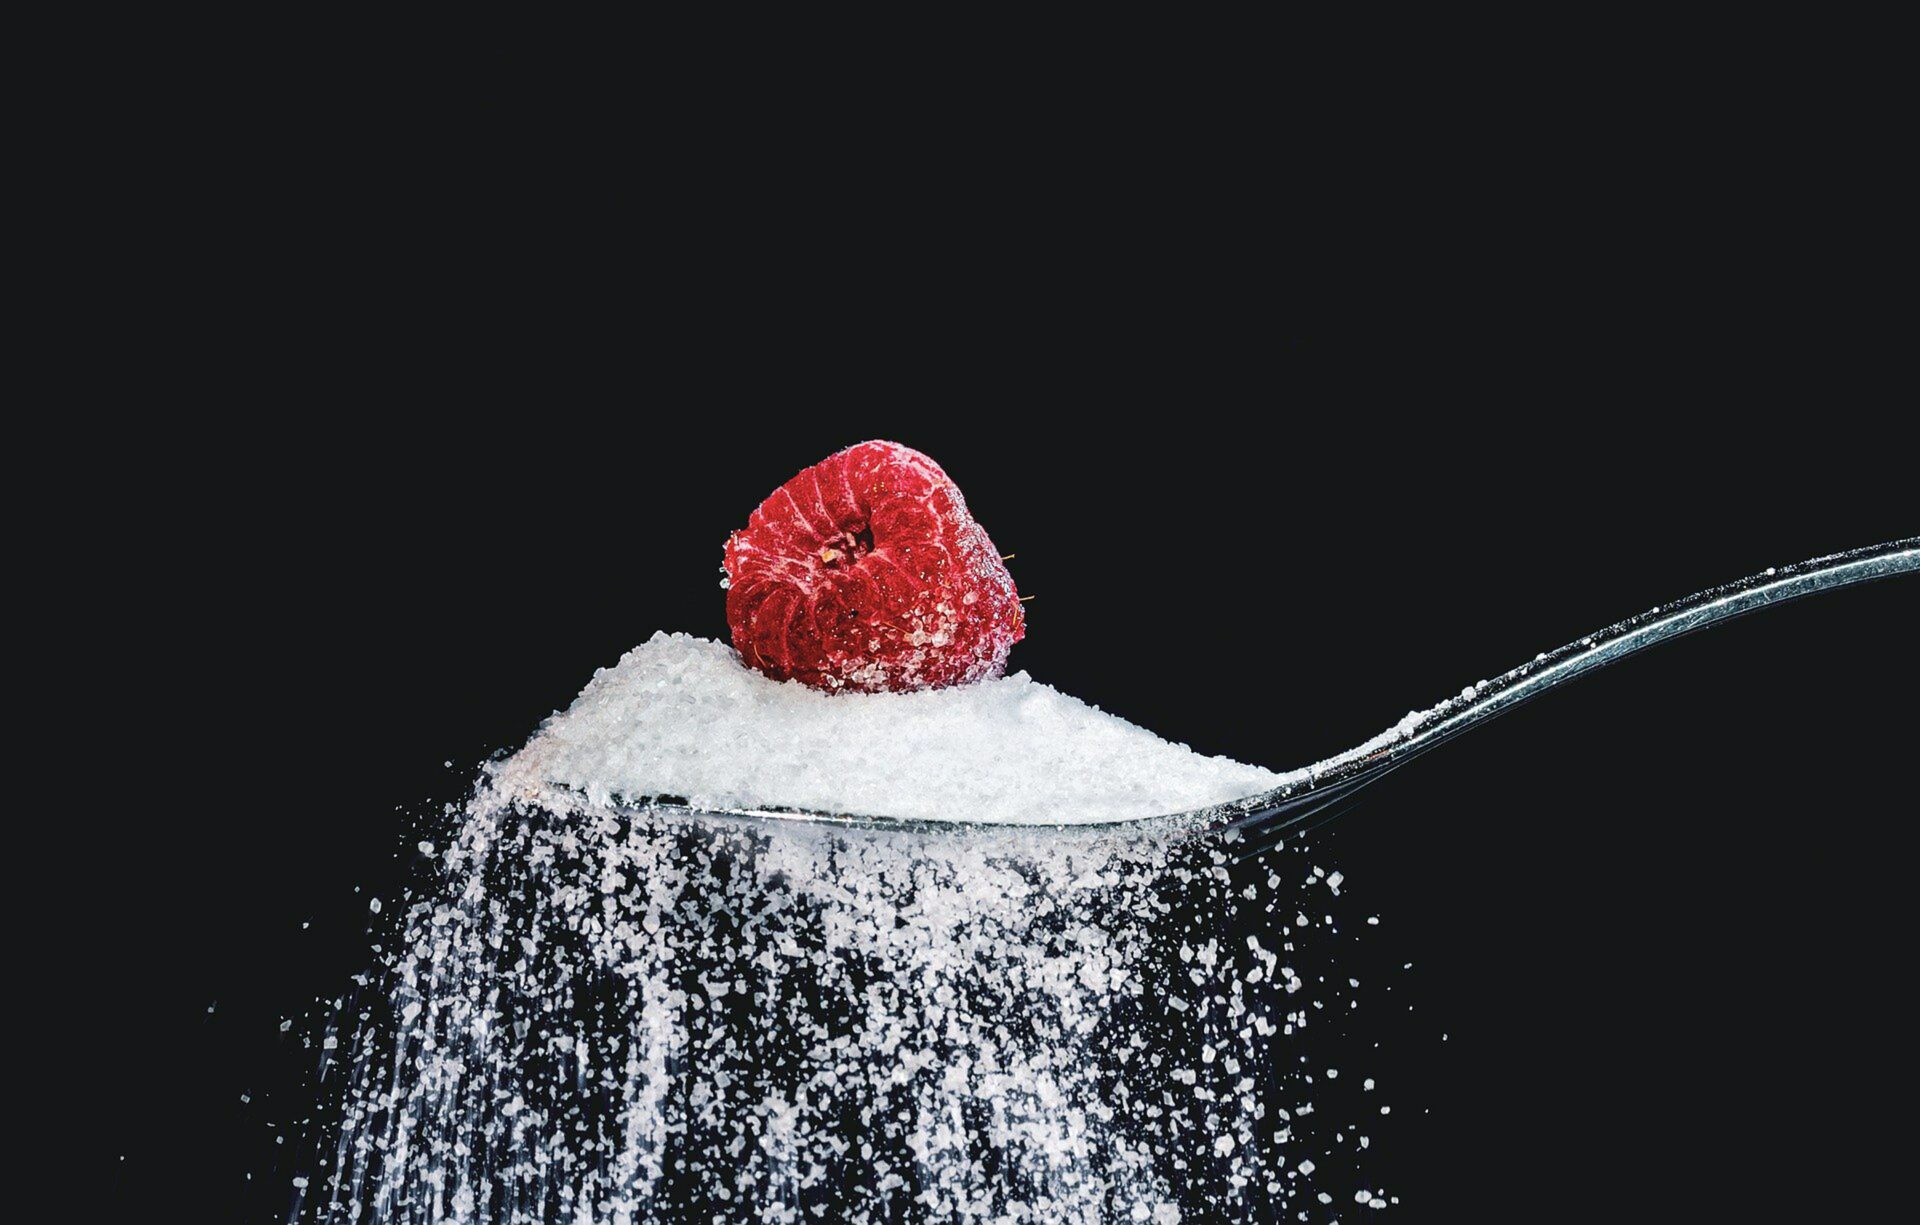 Zucker ist in seiner Reaktion mit anderen Proteinen oder Fetten für die Glykation in unserem Körper verantwortlich. Bildquelle: © Myriam Zilles / Unsplash.com